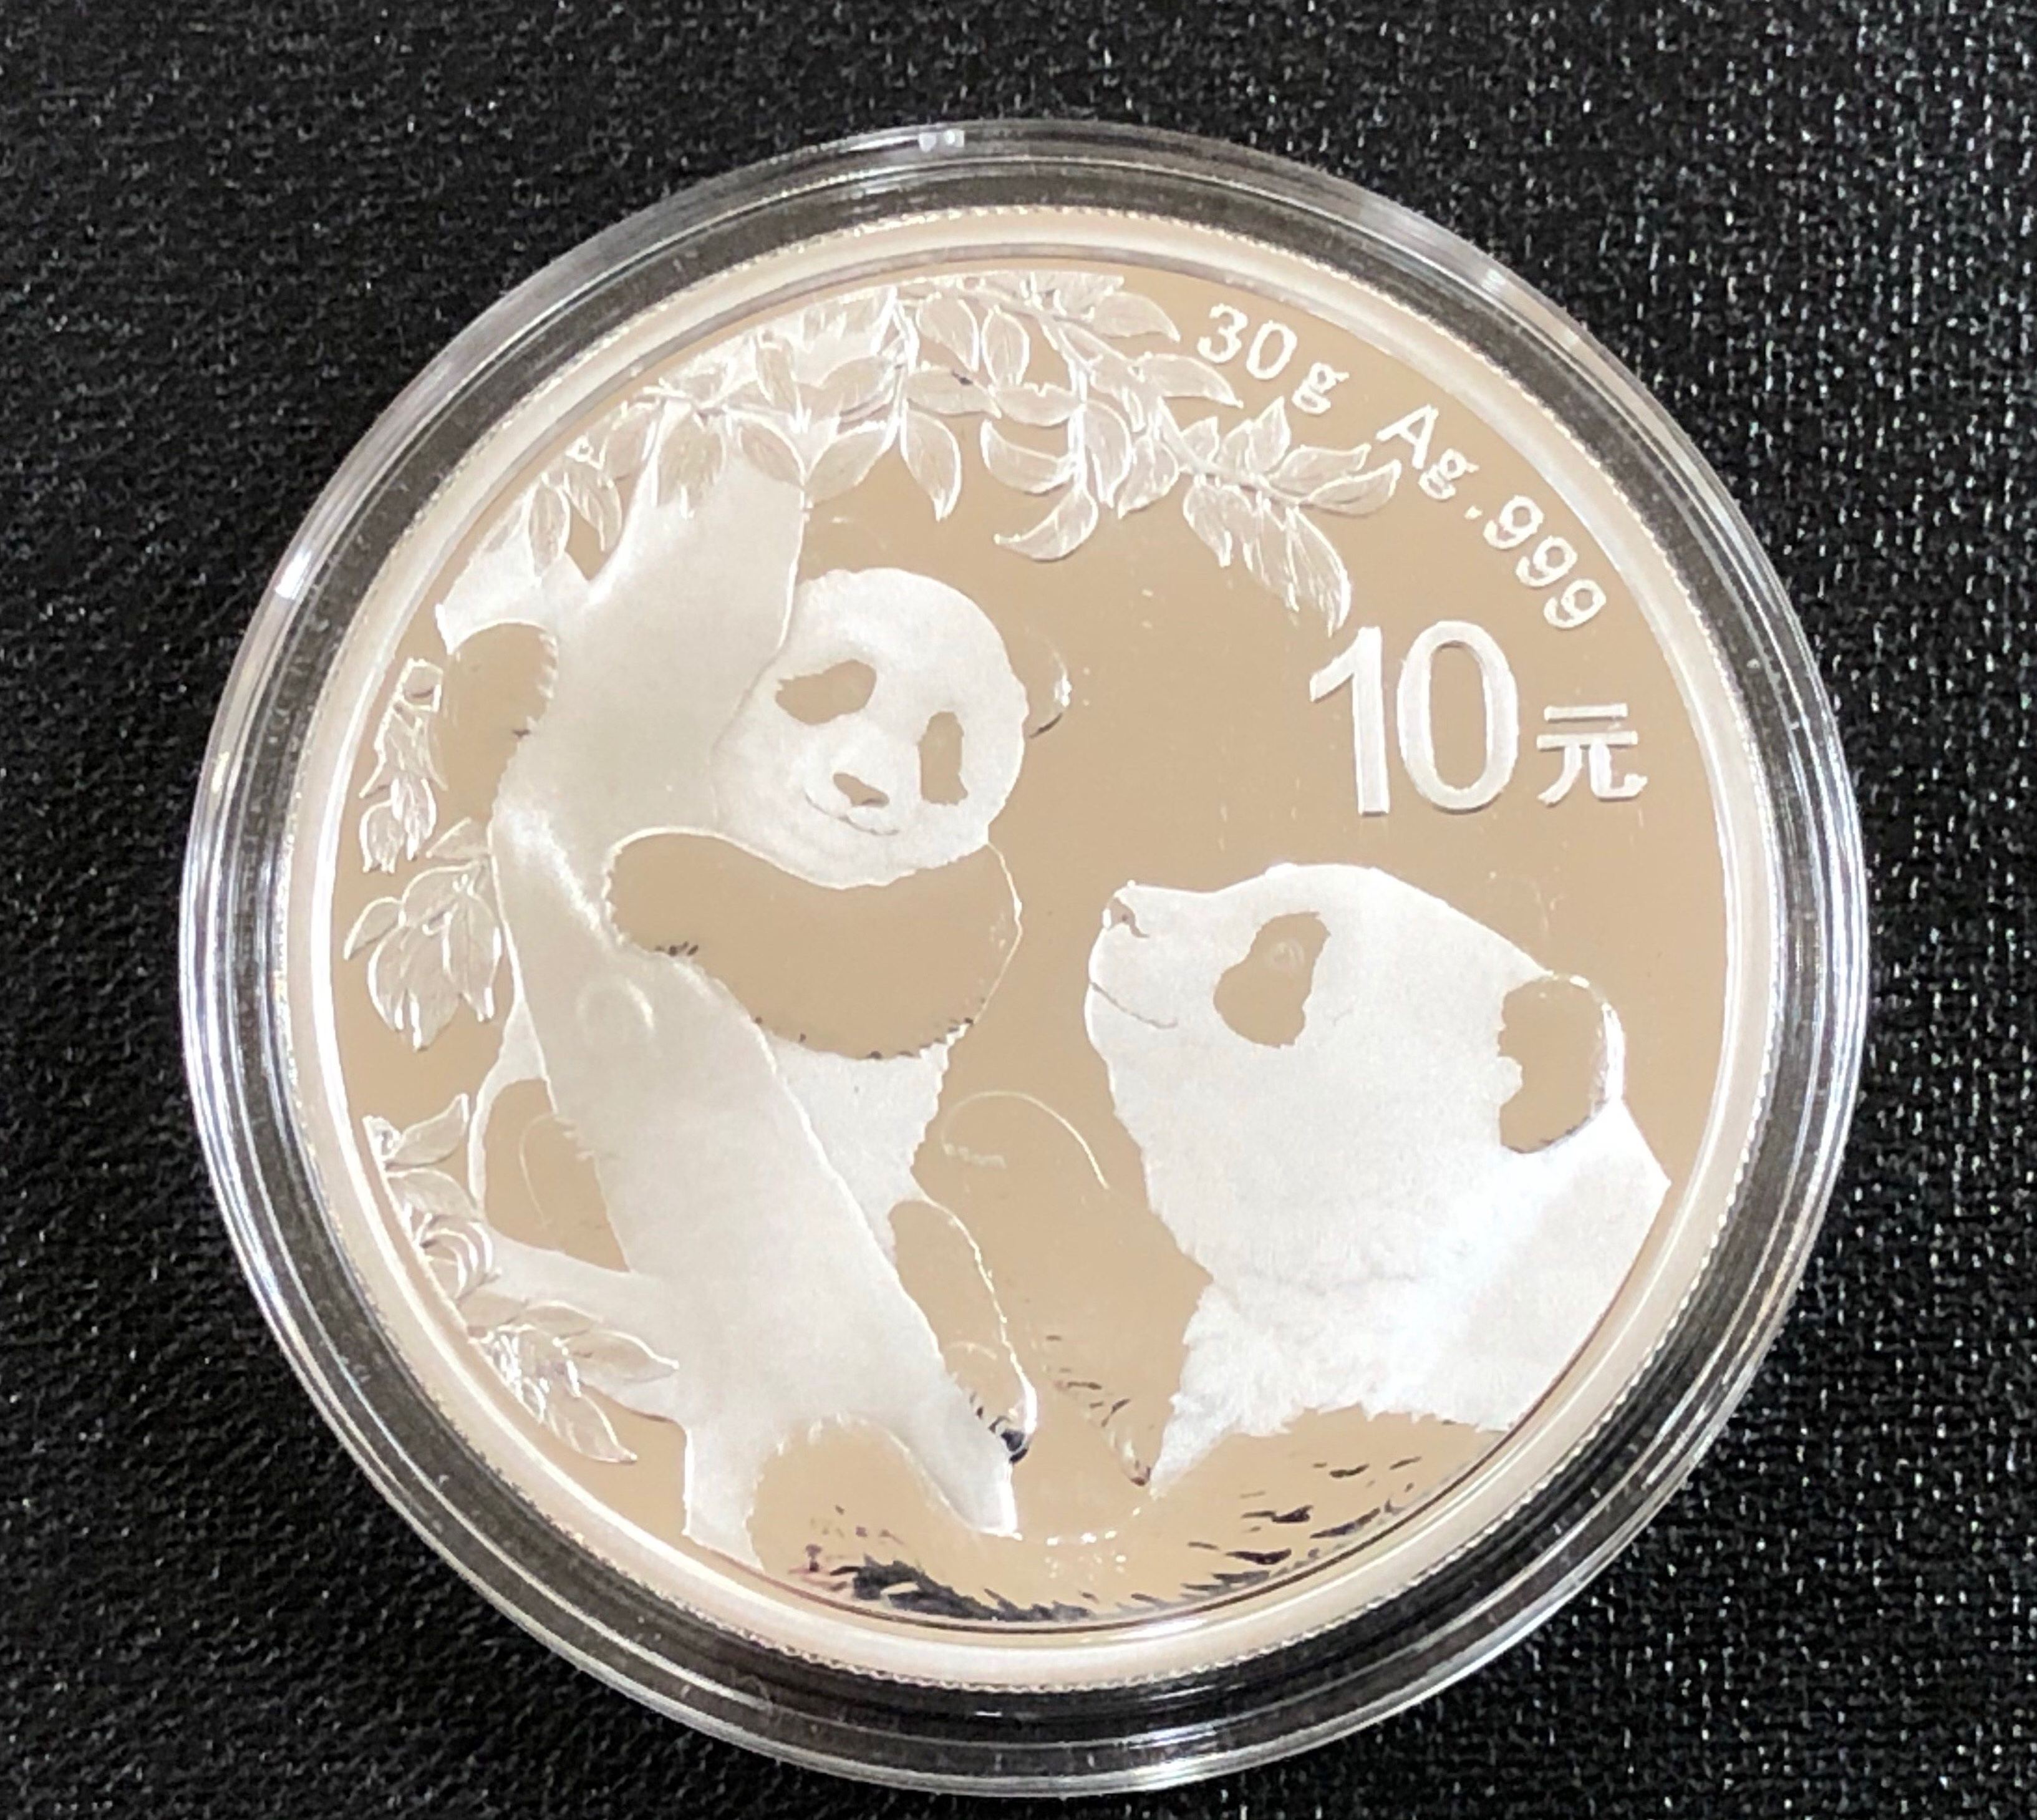 2017年 純銀 パンダ銀貨 30g 中国 10元 シルバーコイン